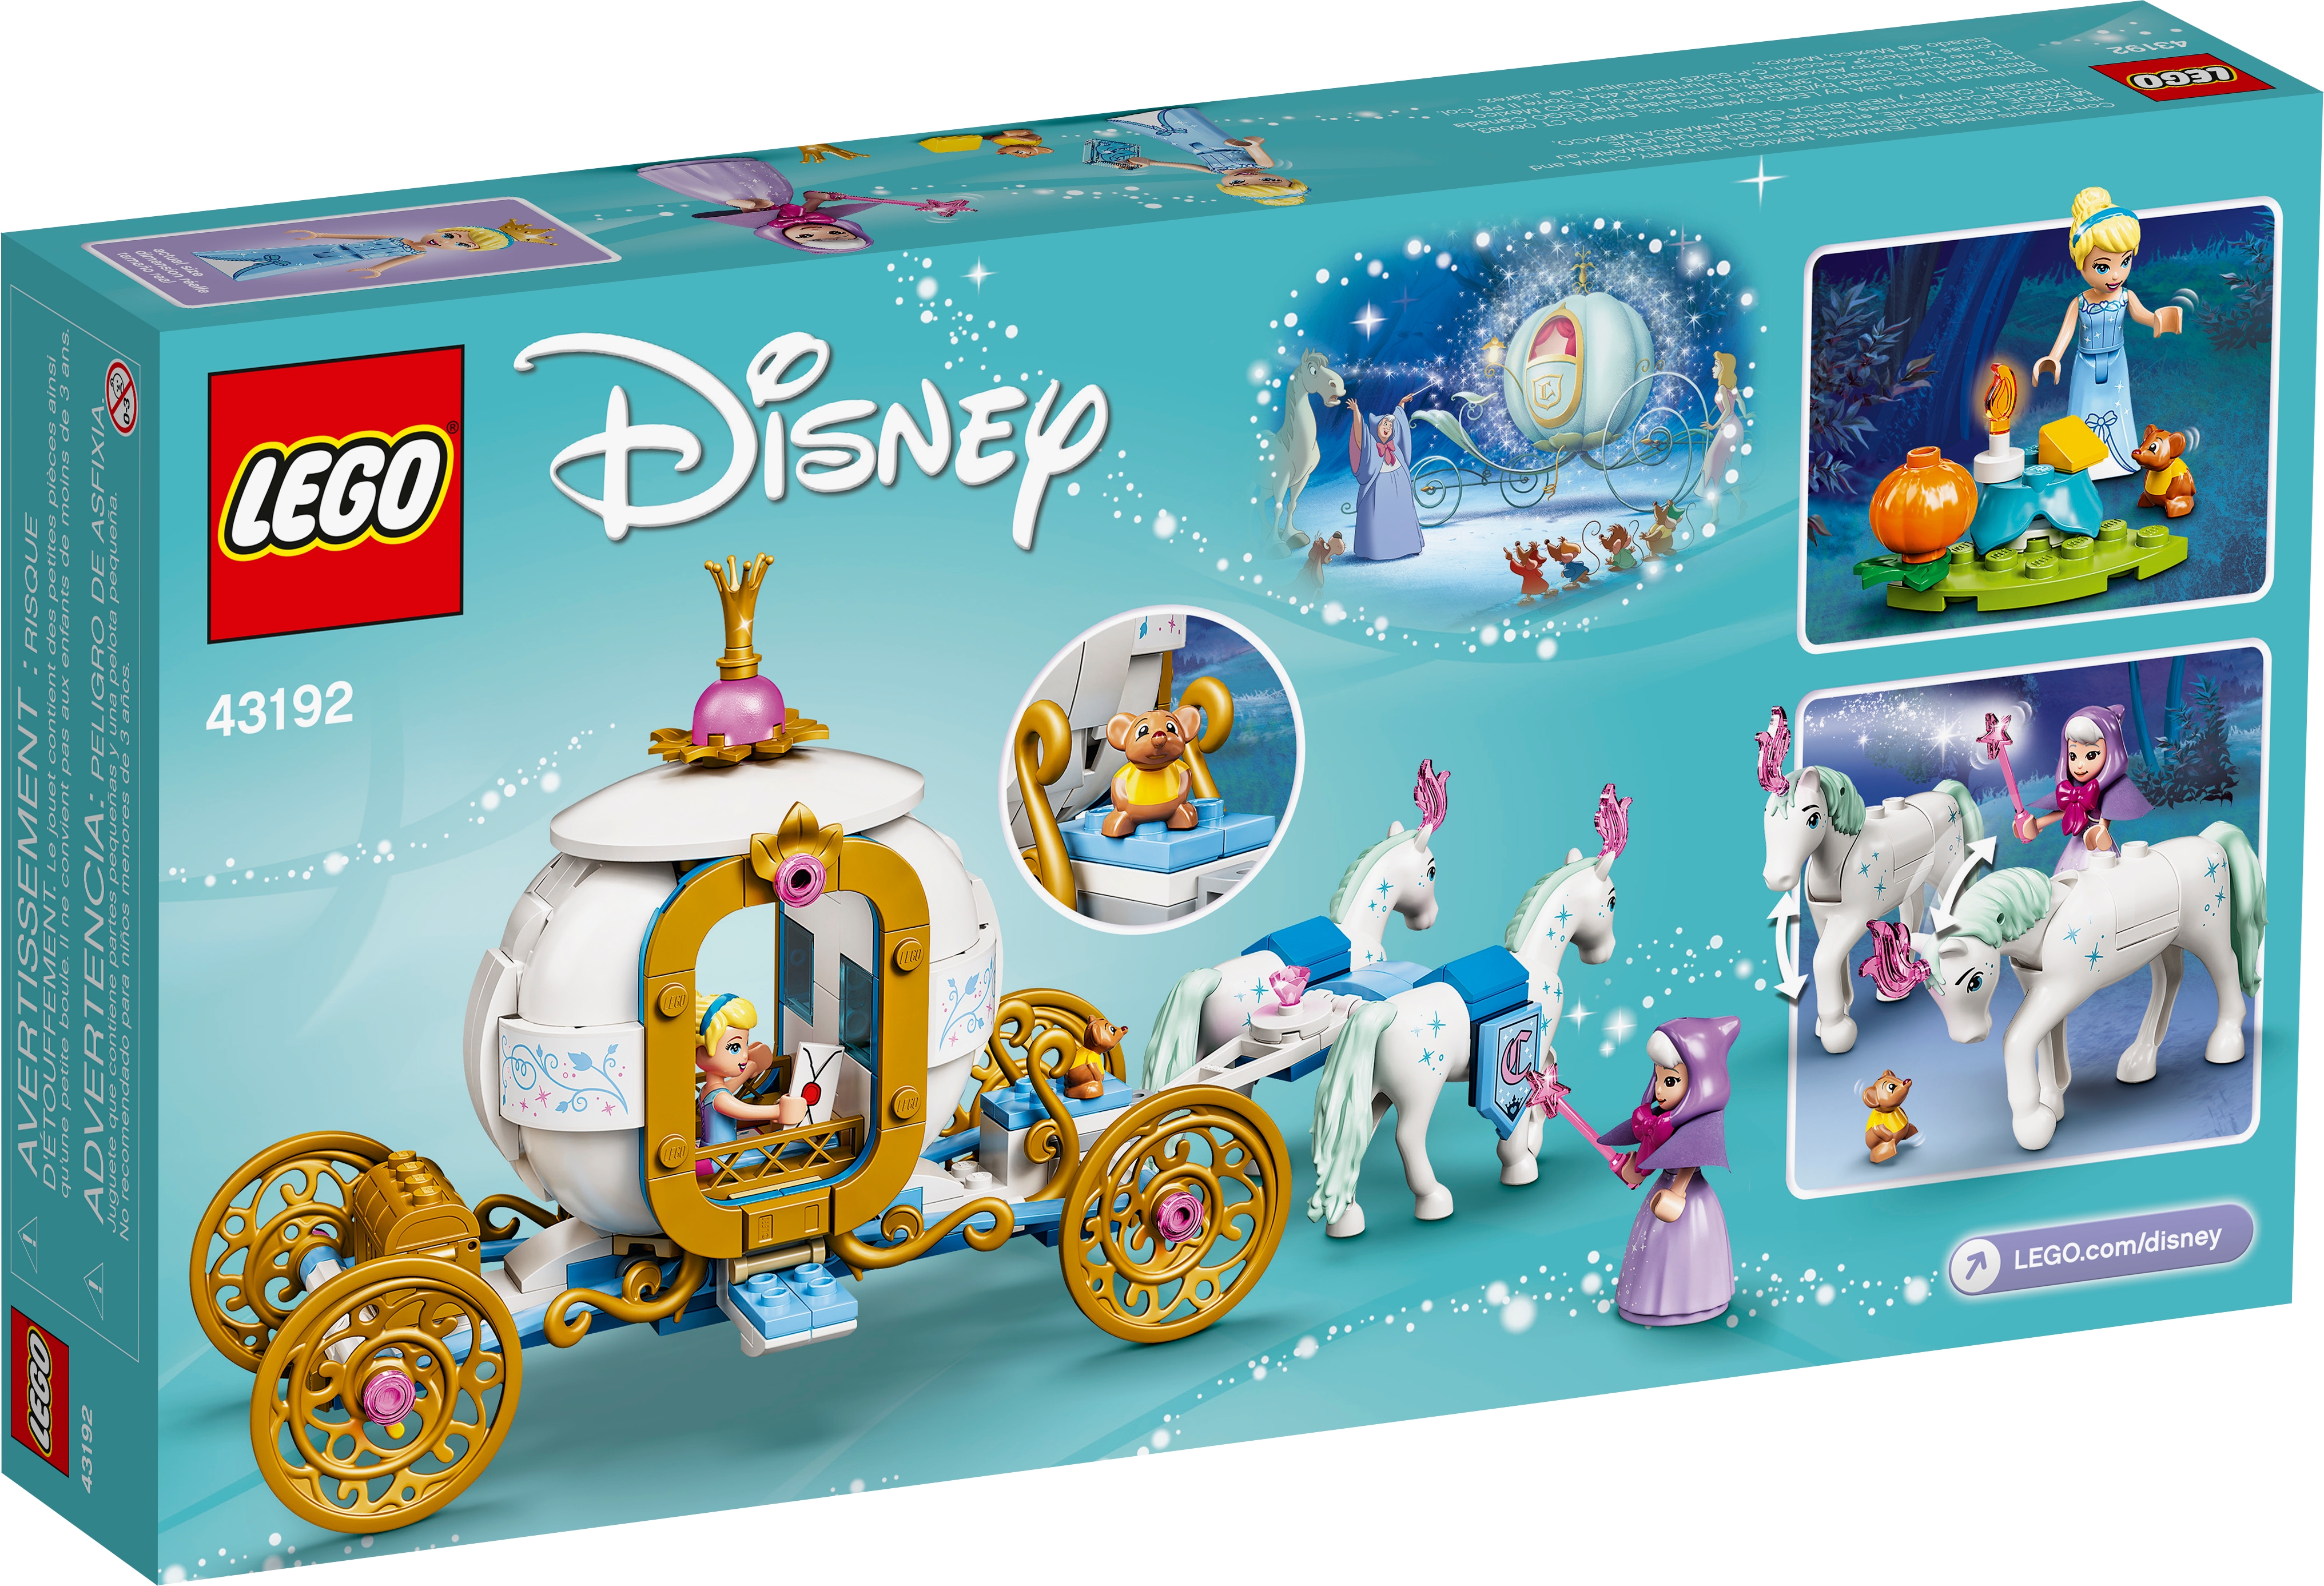 43192 LEGO Disney Princess Cinderella's Royal Carriage 237 Pieces Age 5 Years+ 